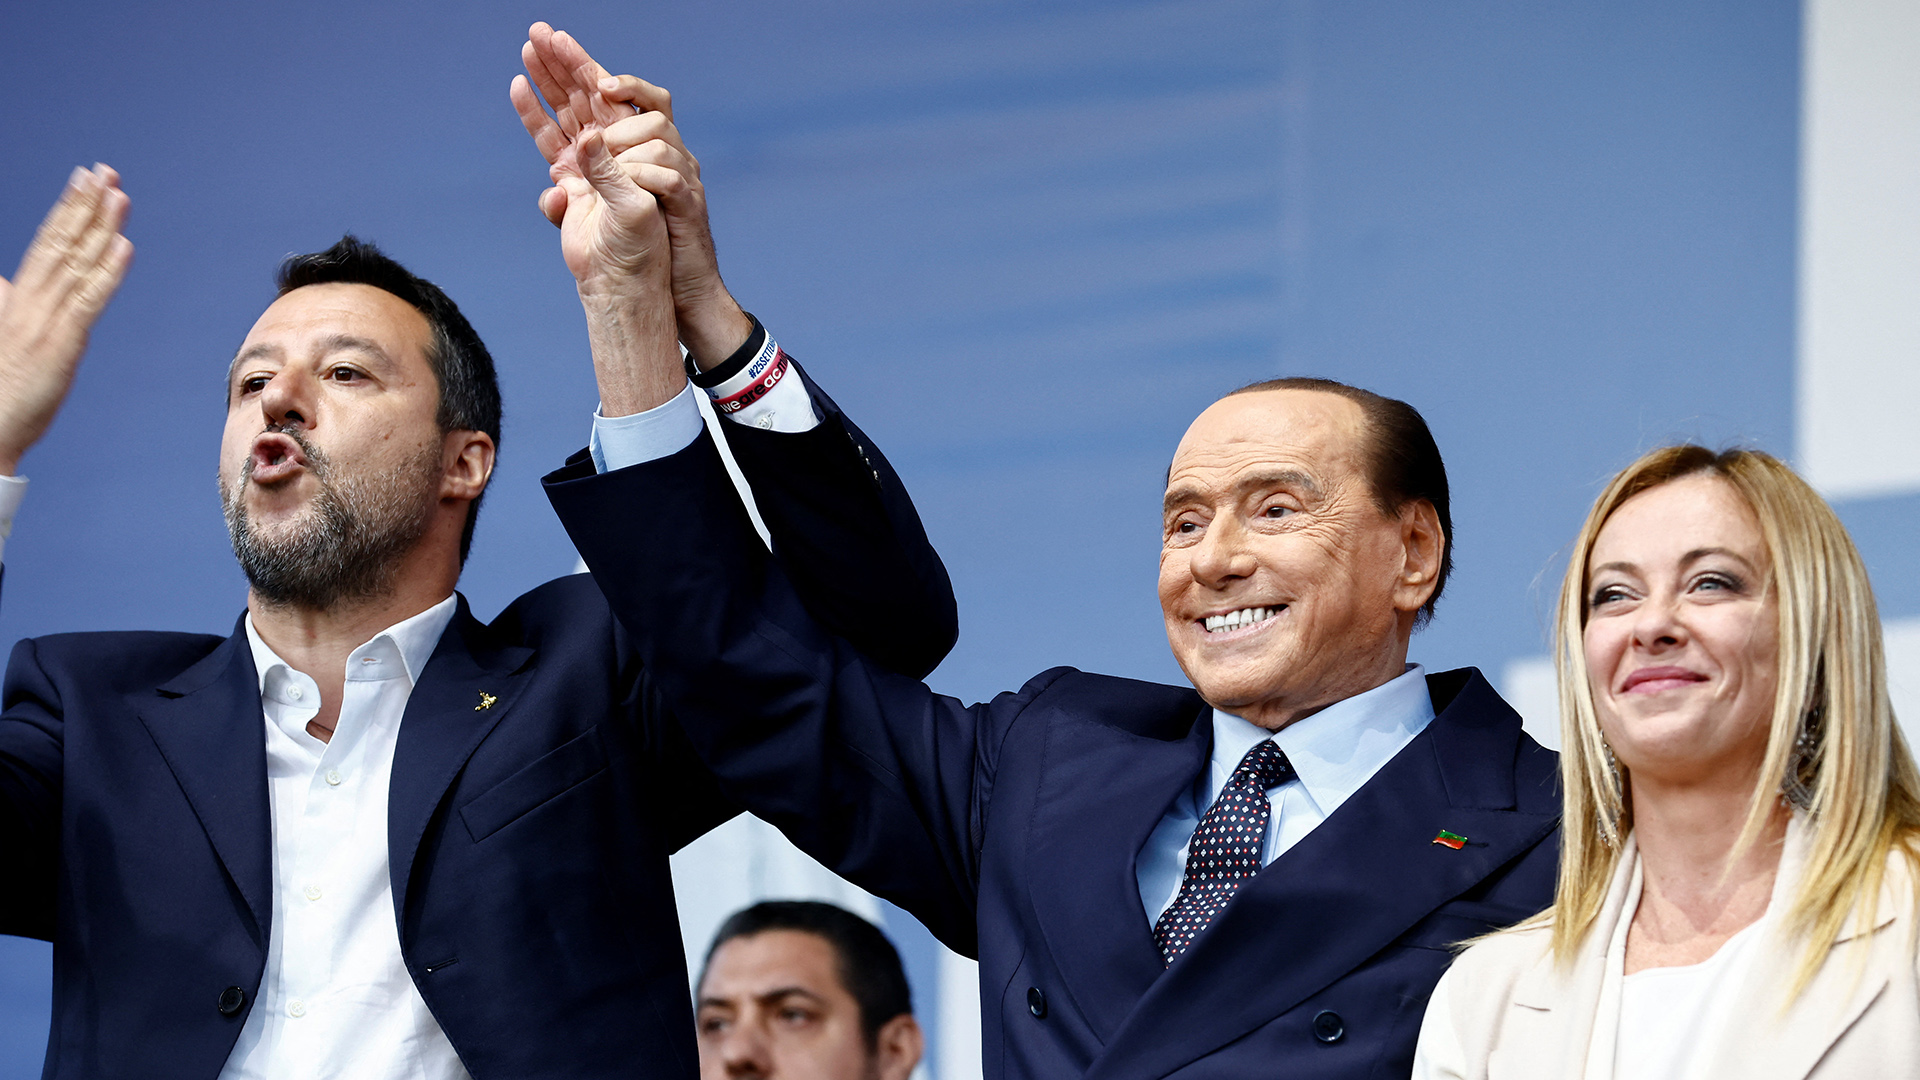 Matteo Salvini, Silvio Berlusconi und Giorgia Meloni im Wahlkampf gemeinsam auf der Bühne (22.09.2022) | REUTERS